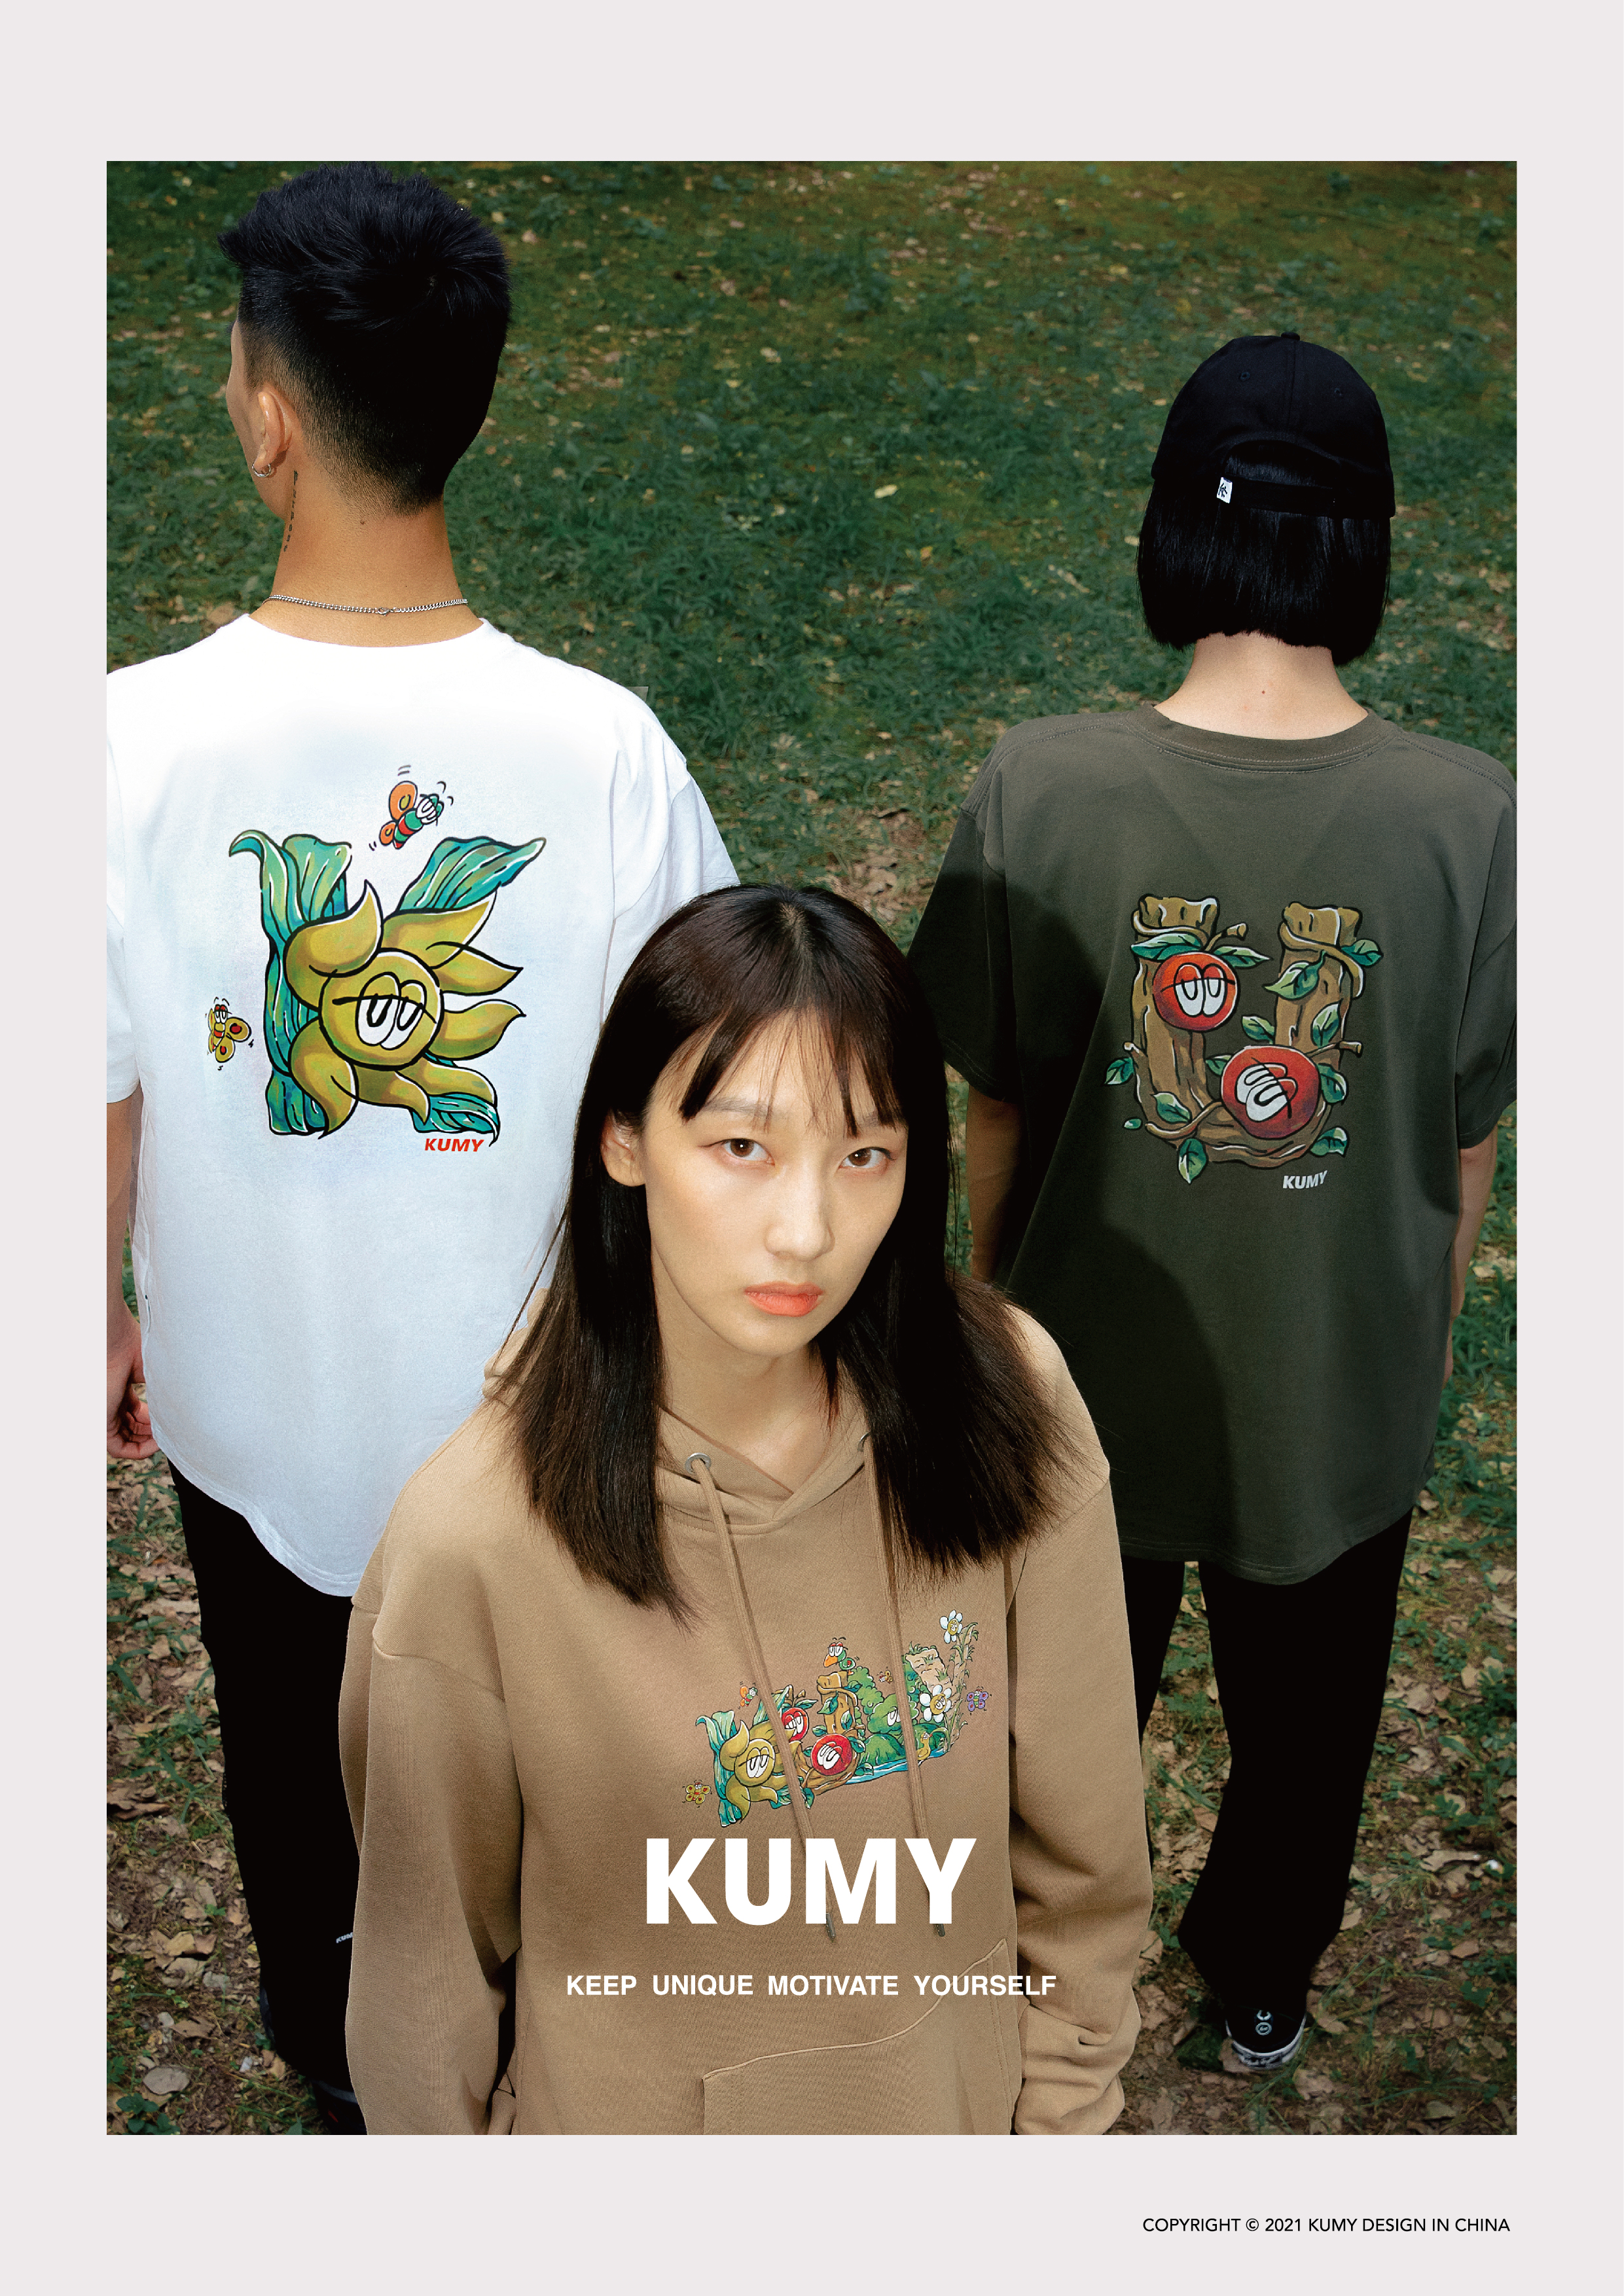 全新独立原创品牌KUMY于7月10日正式上线